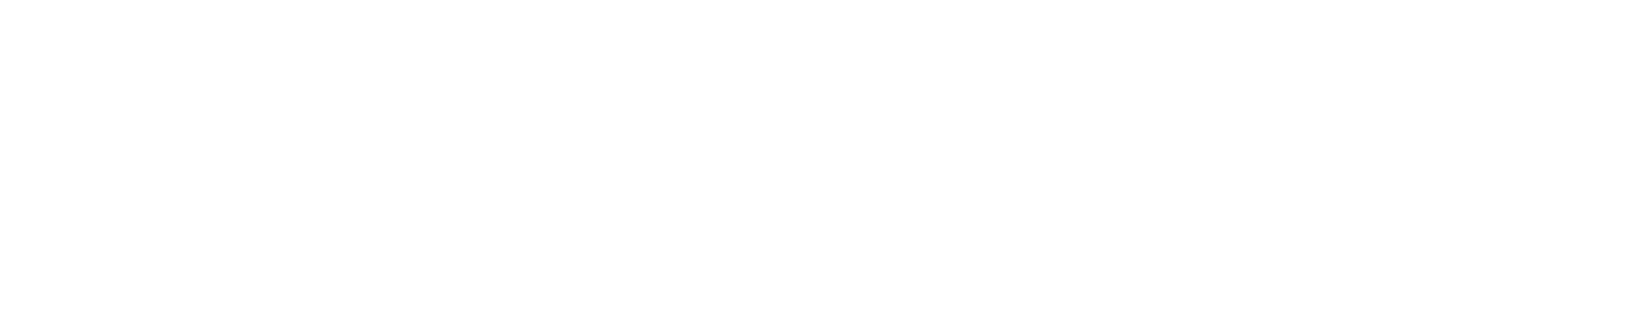 AdTheorent logo large for dark backgrounds (transparent PNG)